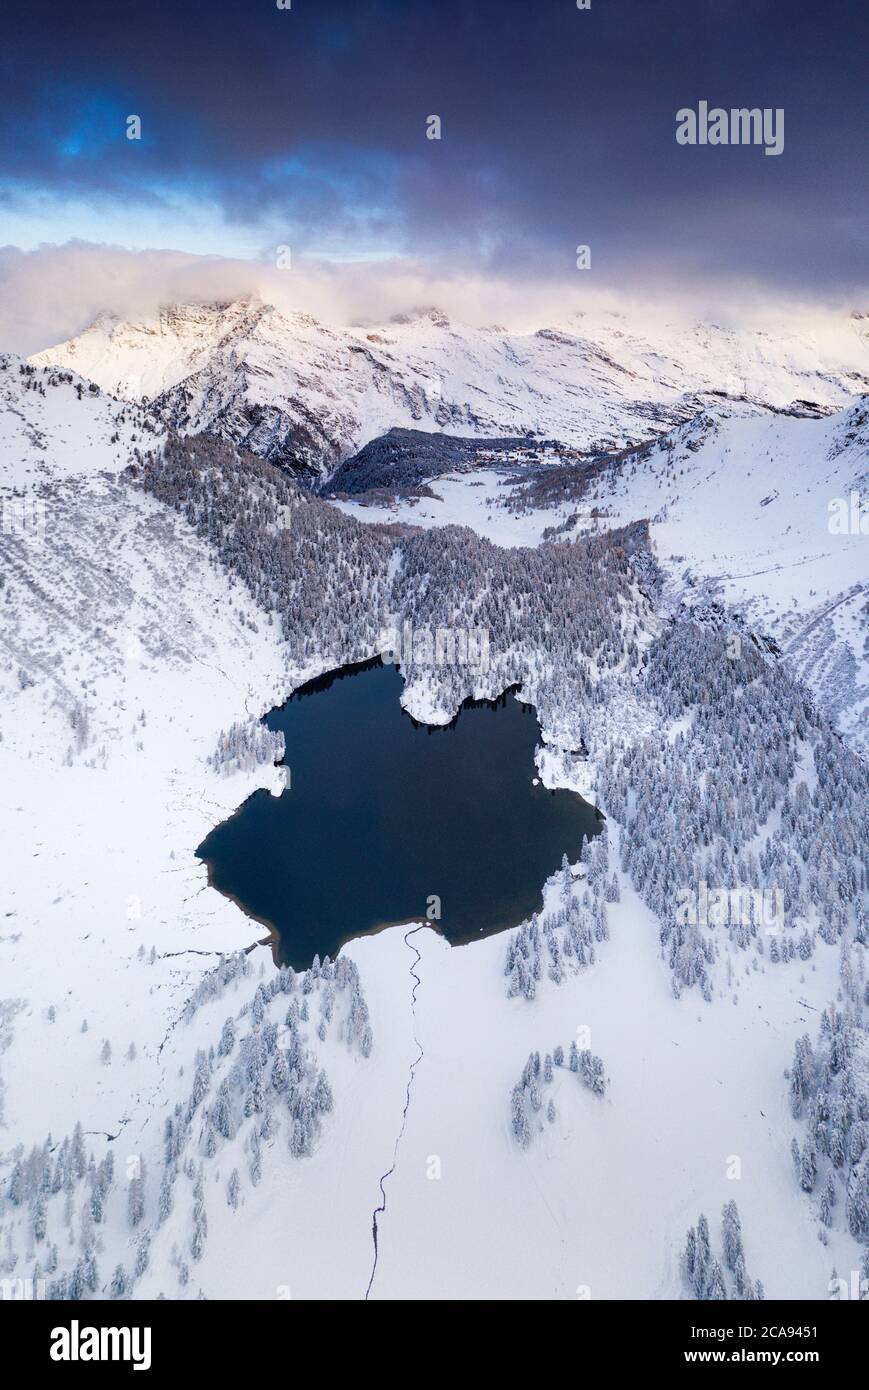 Lac Cavloc entouré de neige, vue aérienne, vallée de Bregaglia, Engadine, canton de Graubunden, Suisse, Europe Banque D'Images